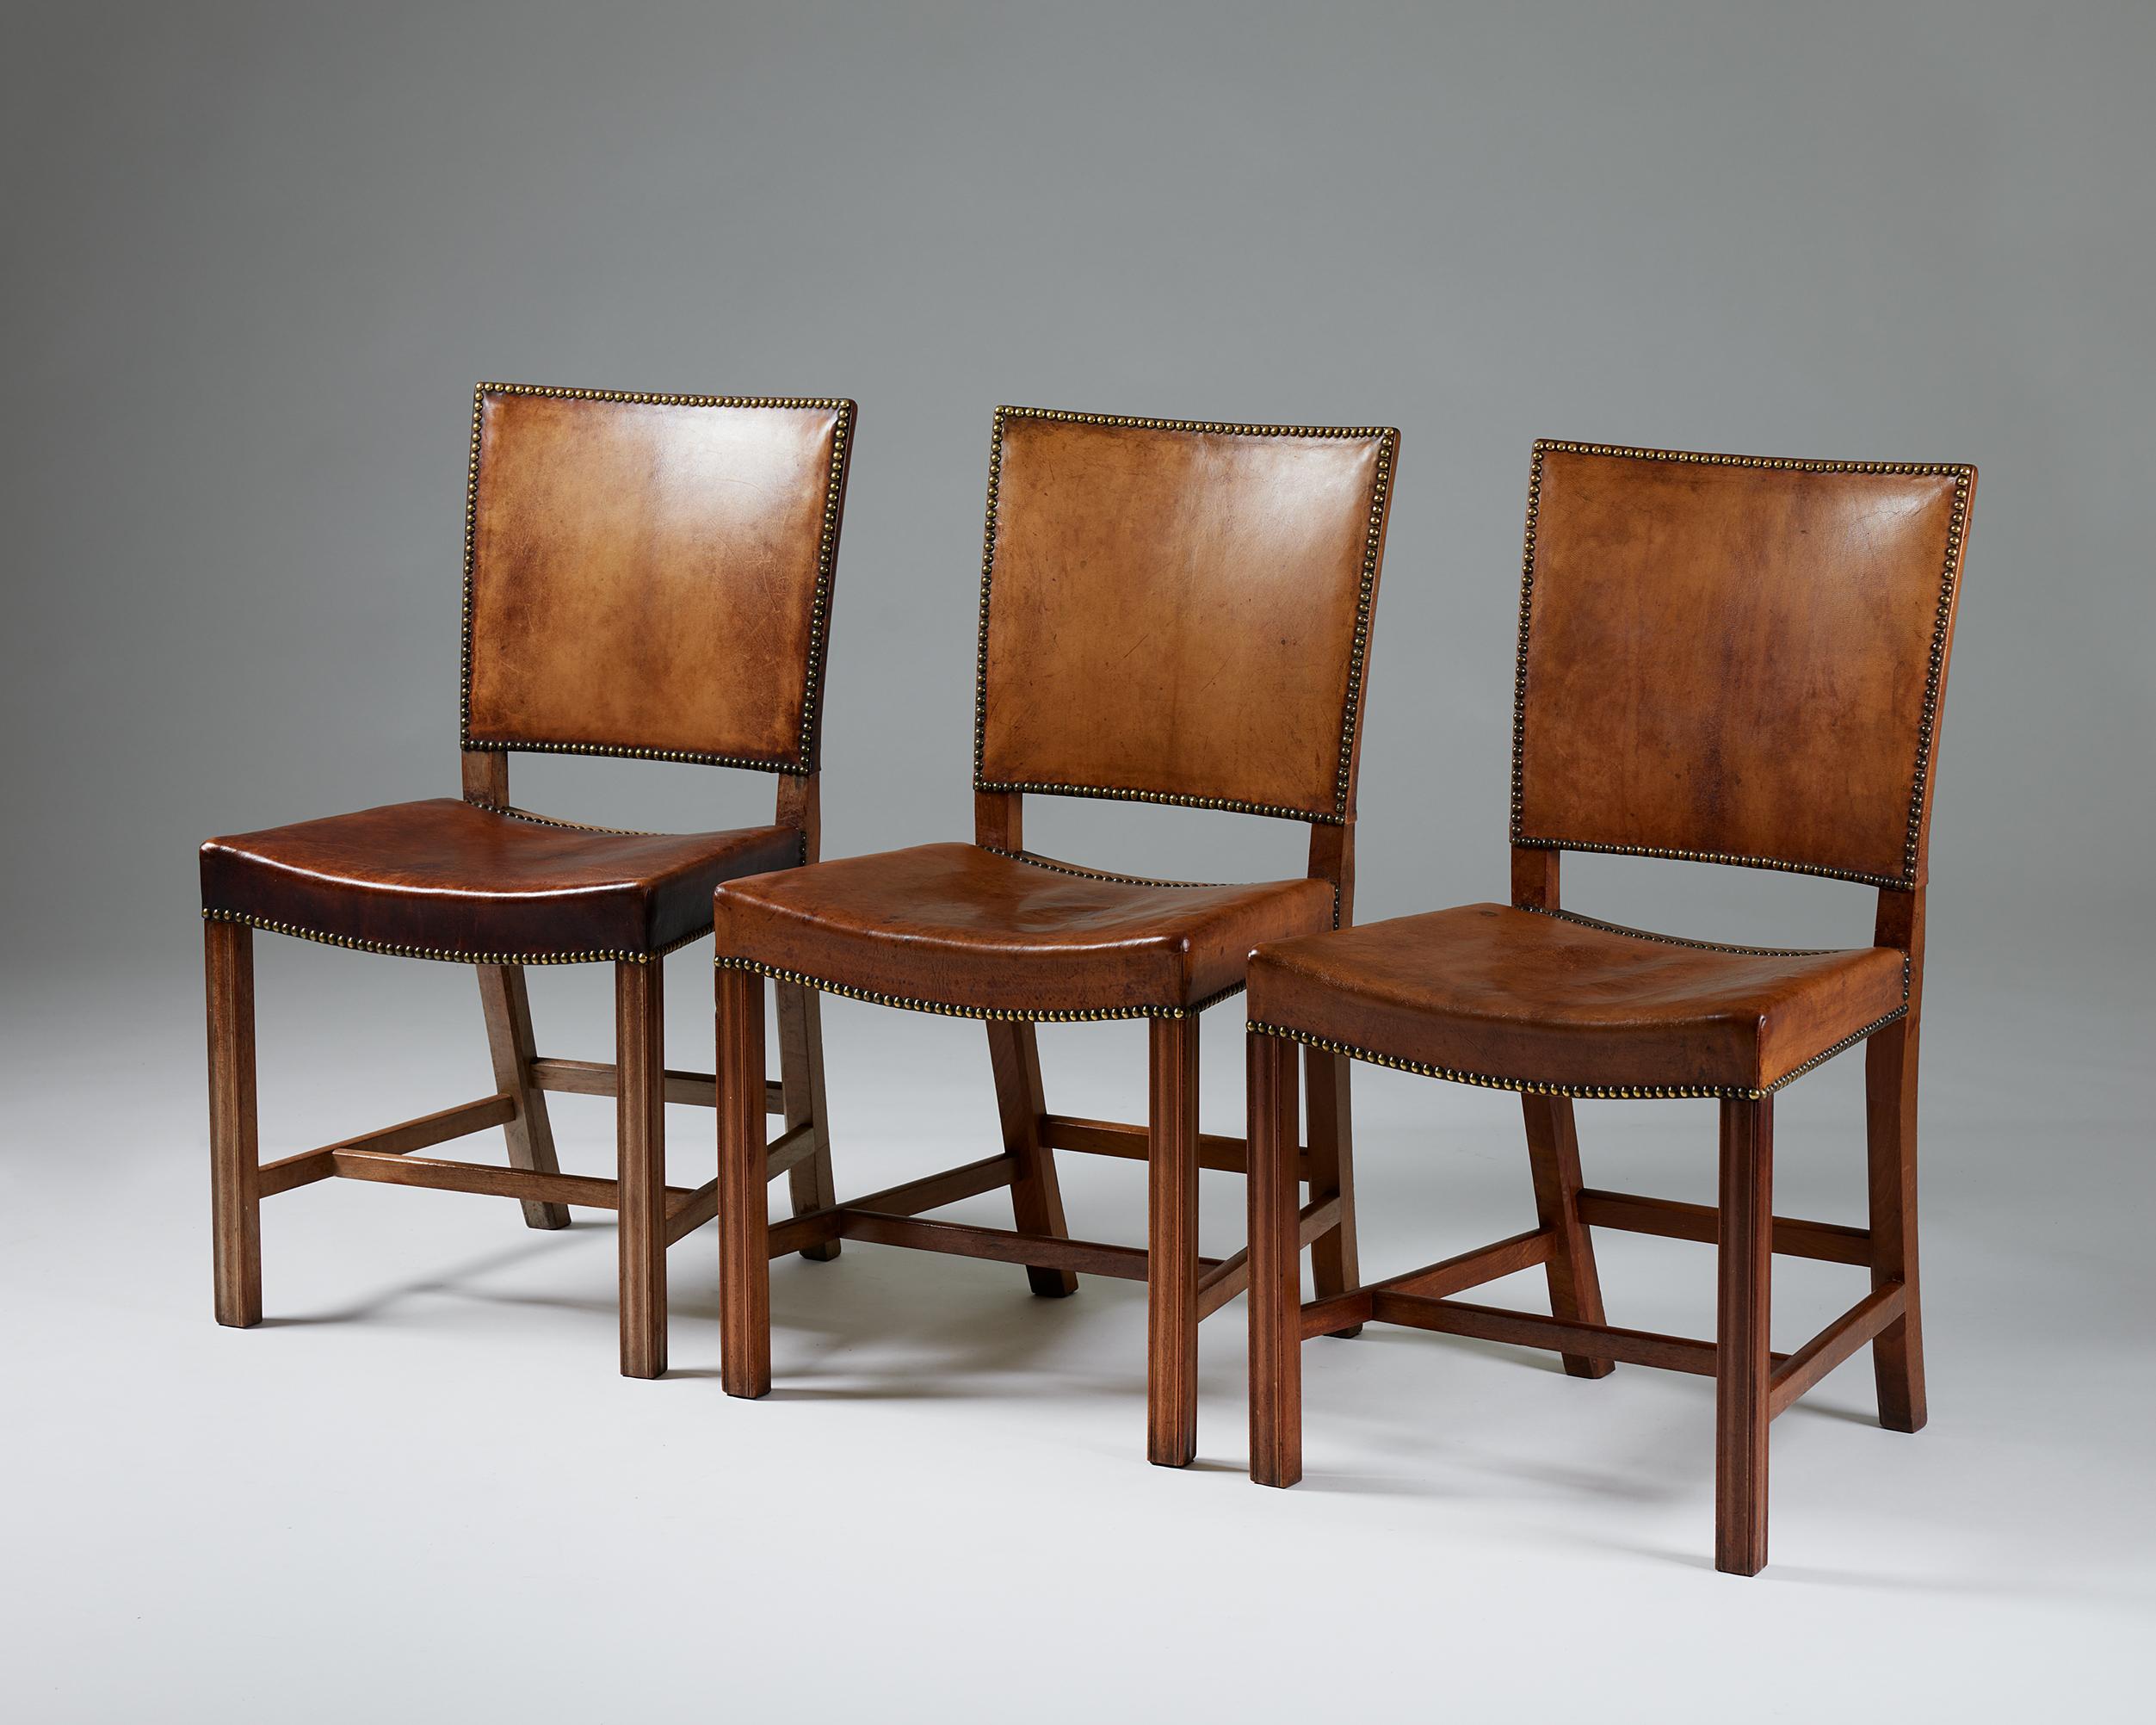 Satz von drei Stühlen 'The Red Chairs' Modell 3949, entworfen von Kaare Klint für Rud. Rasmussen Fabrik,
Dänemark, 1928.

Kubanisches Mahagoni, Nigerleder, Polsterung und Messingnägel.

Markiert.

Unser Set von drei 'The Red Chairs' Modell 3949,